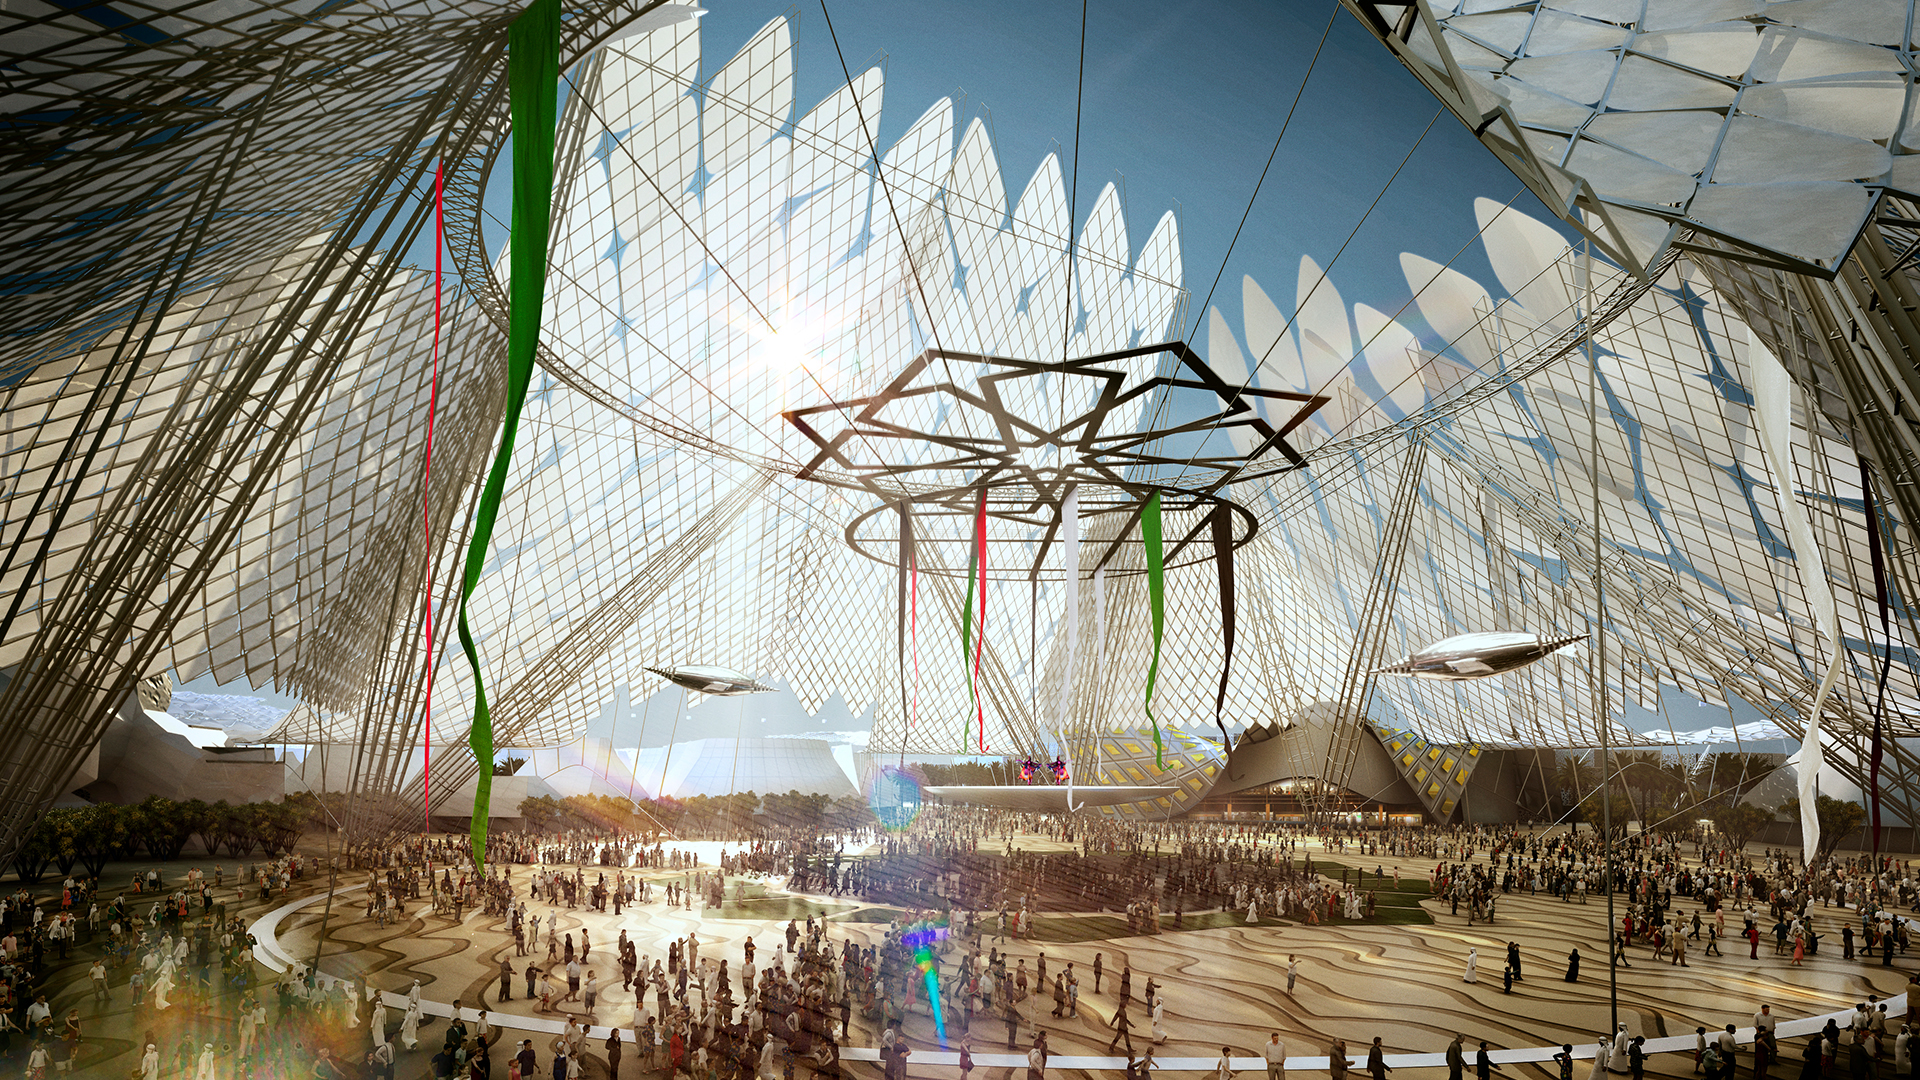 Dubai-2020-world-expo-main-plaza